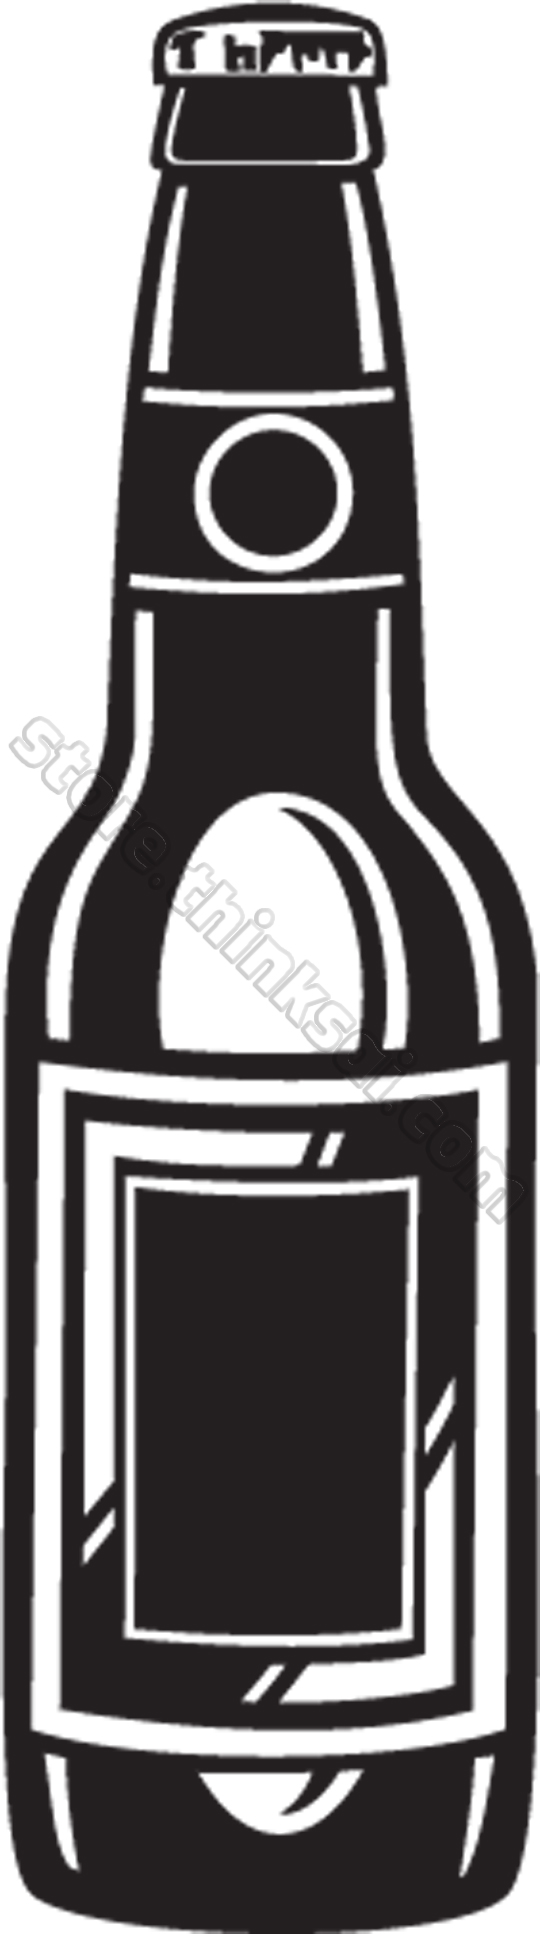 Beer Bottle Clip Art